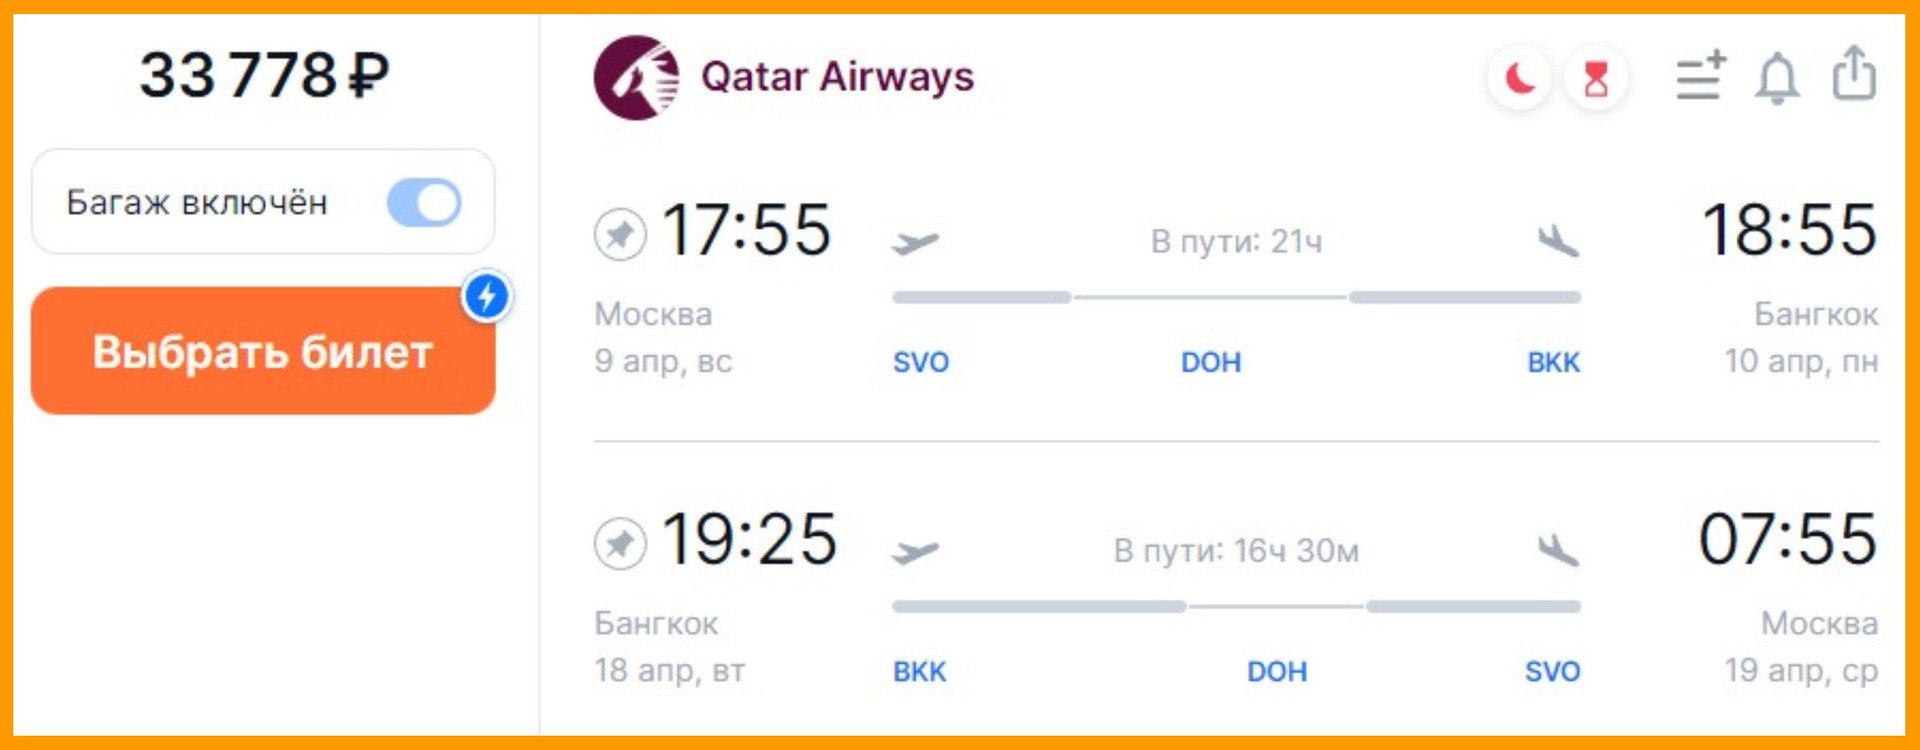 билеты на самолет в египет